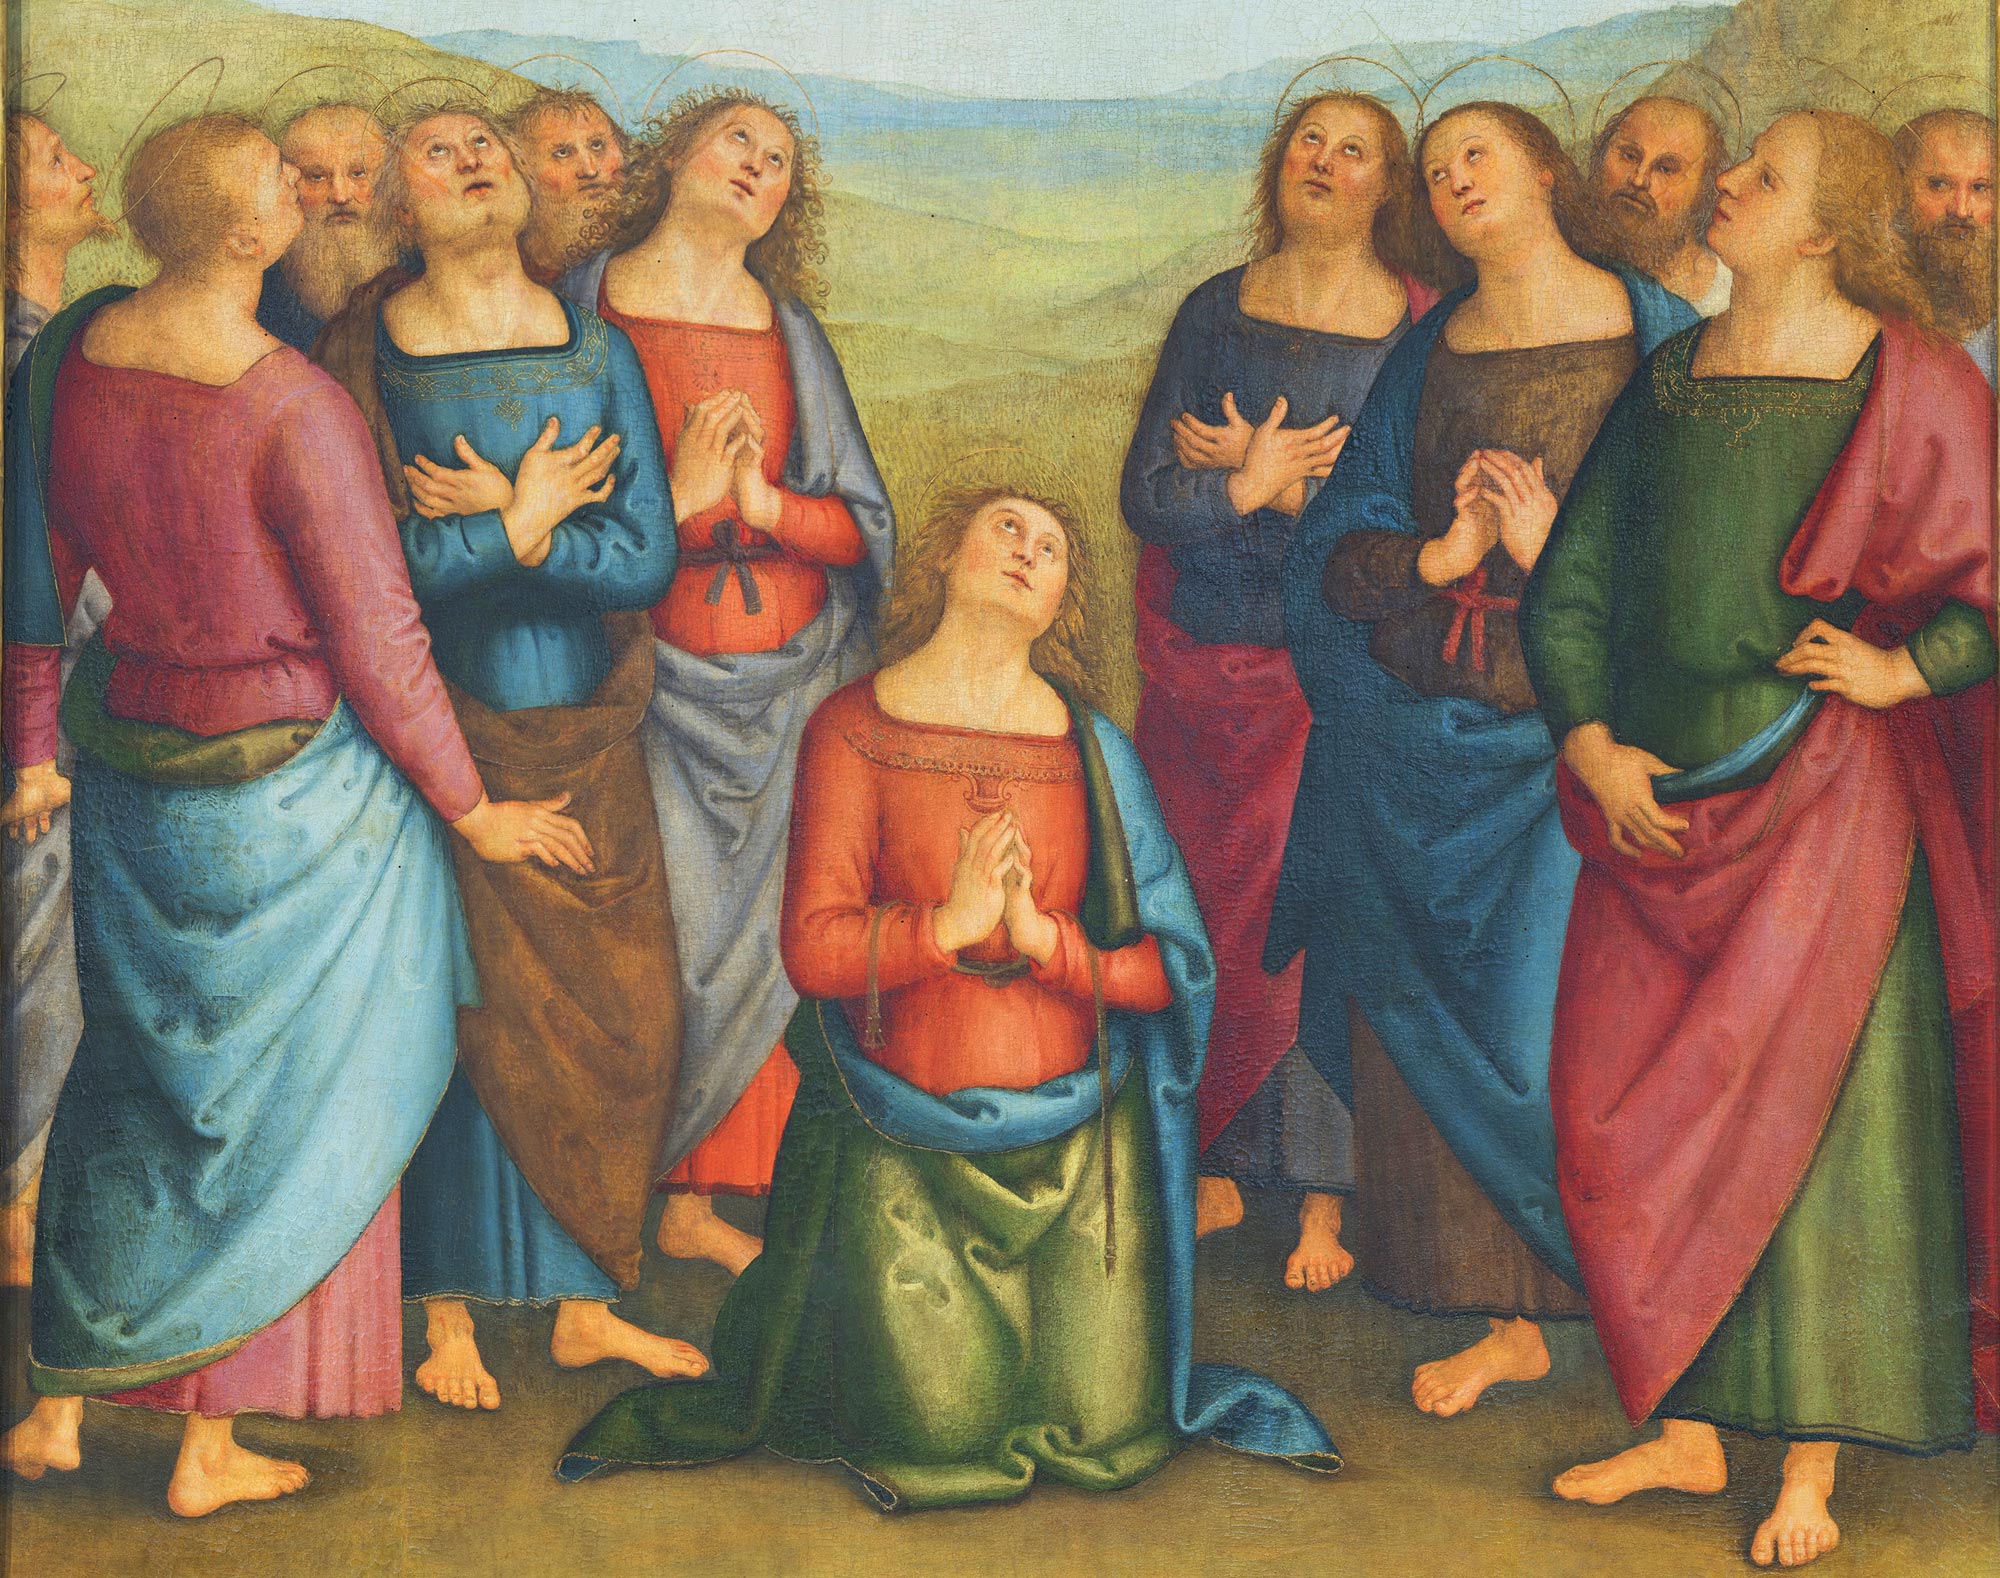 Apostles